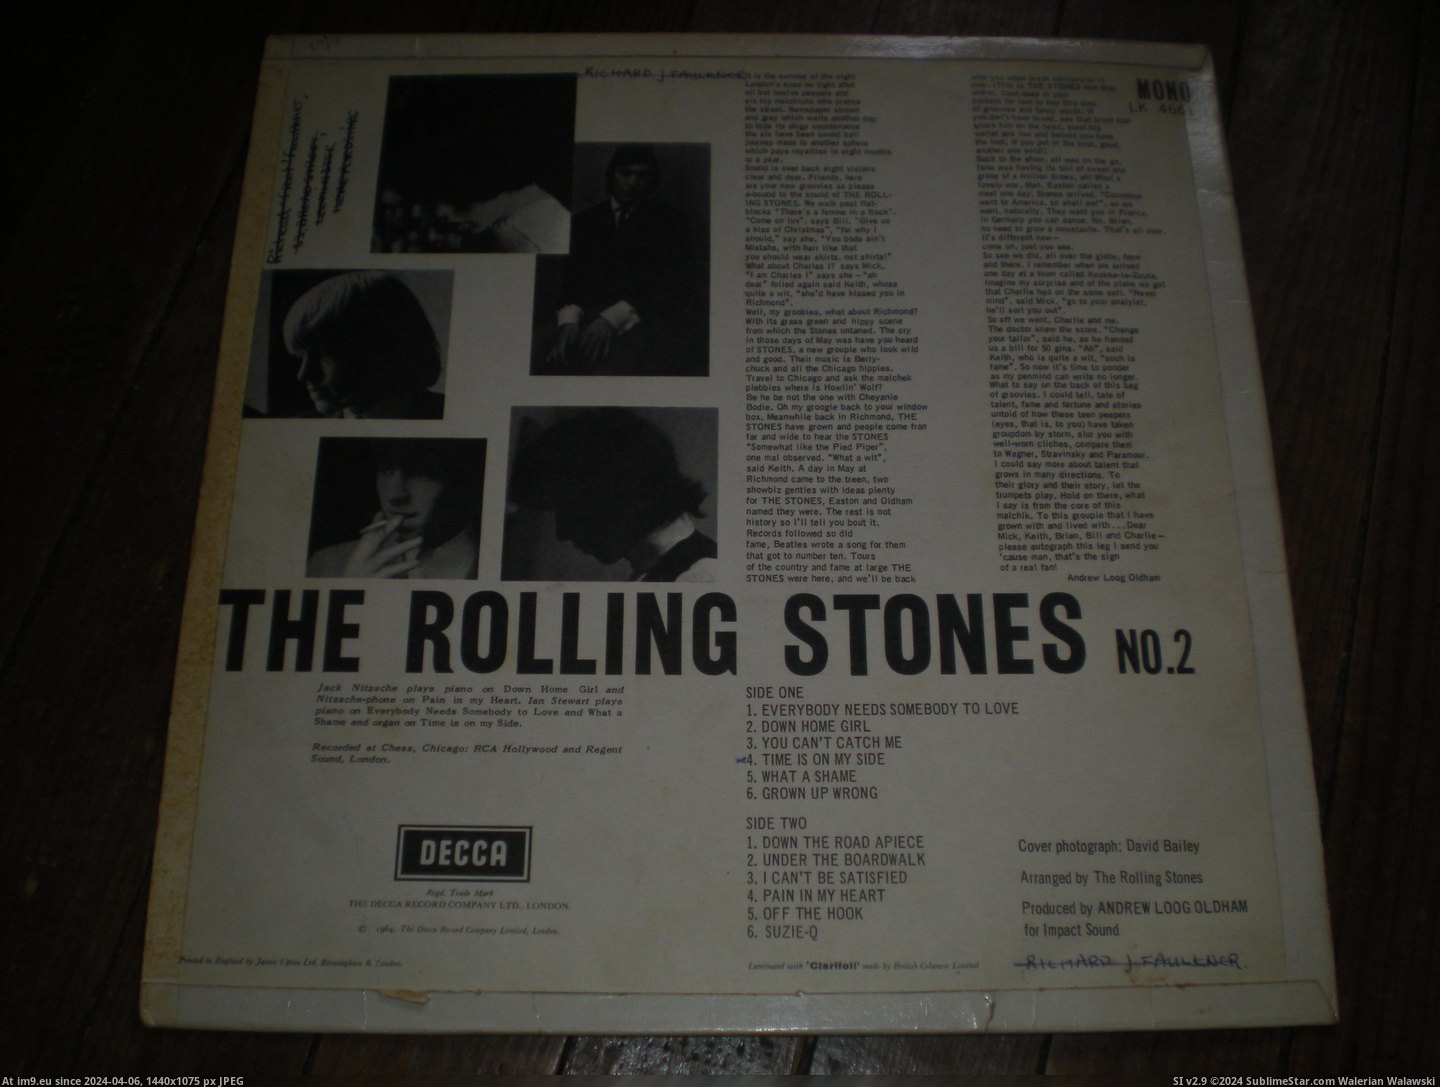  #Stones  Stones 2 12-02-14 6 Pic. (Bild von album new 1))